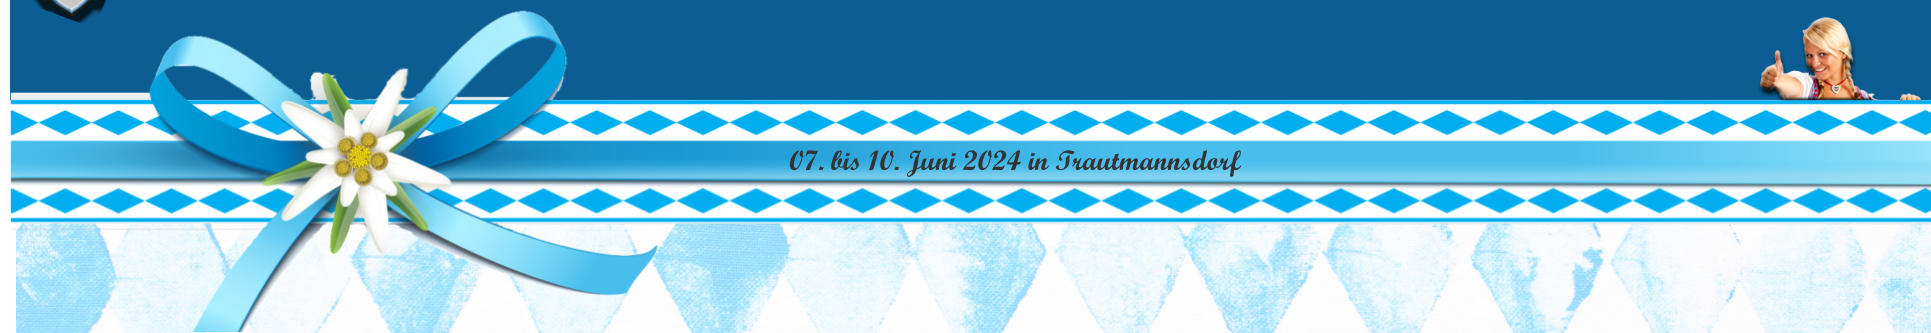 07. bis 10. Juni 2024 in Trautmannsdorf